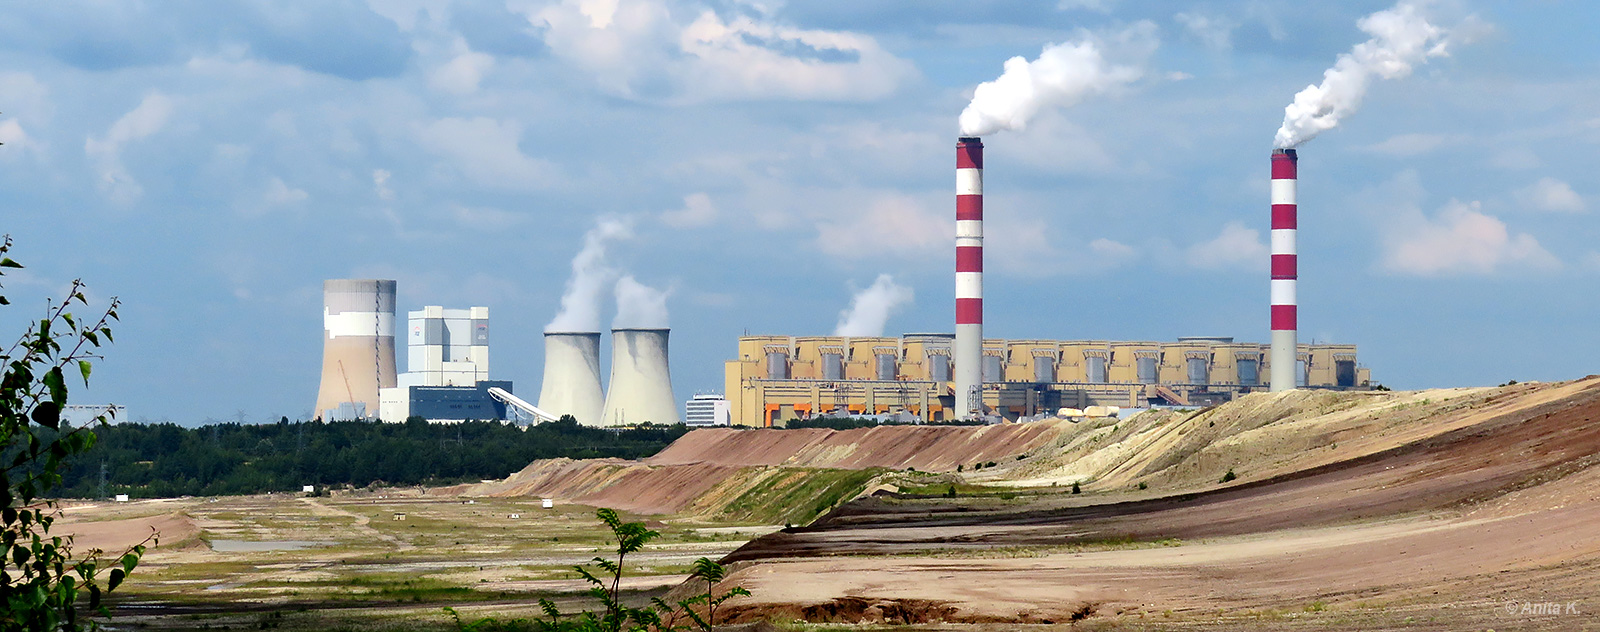 Kopalnia Węgla Brunatnego Bełchatów Elektrownia Bełchatów punkt widokowy Kleszczów